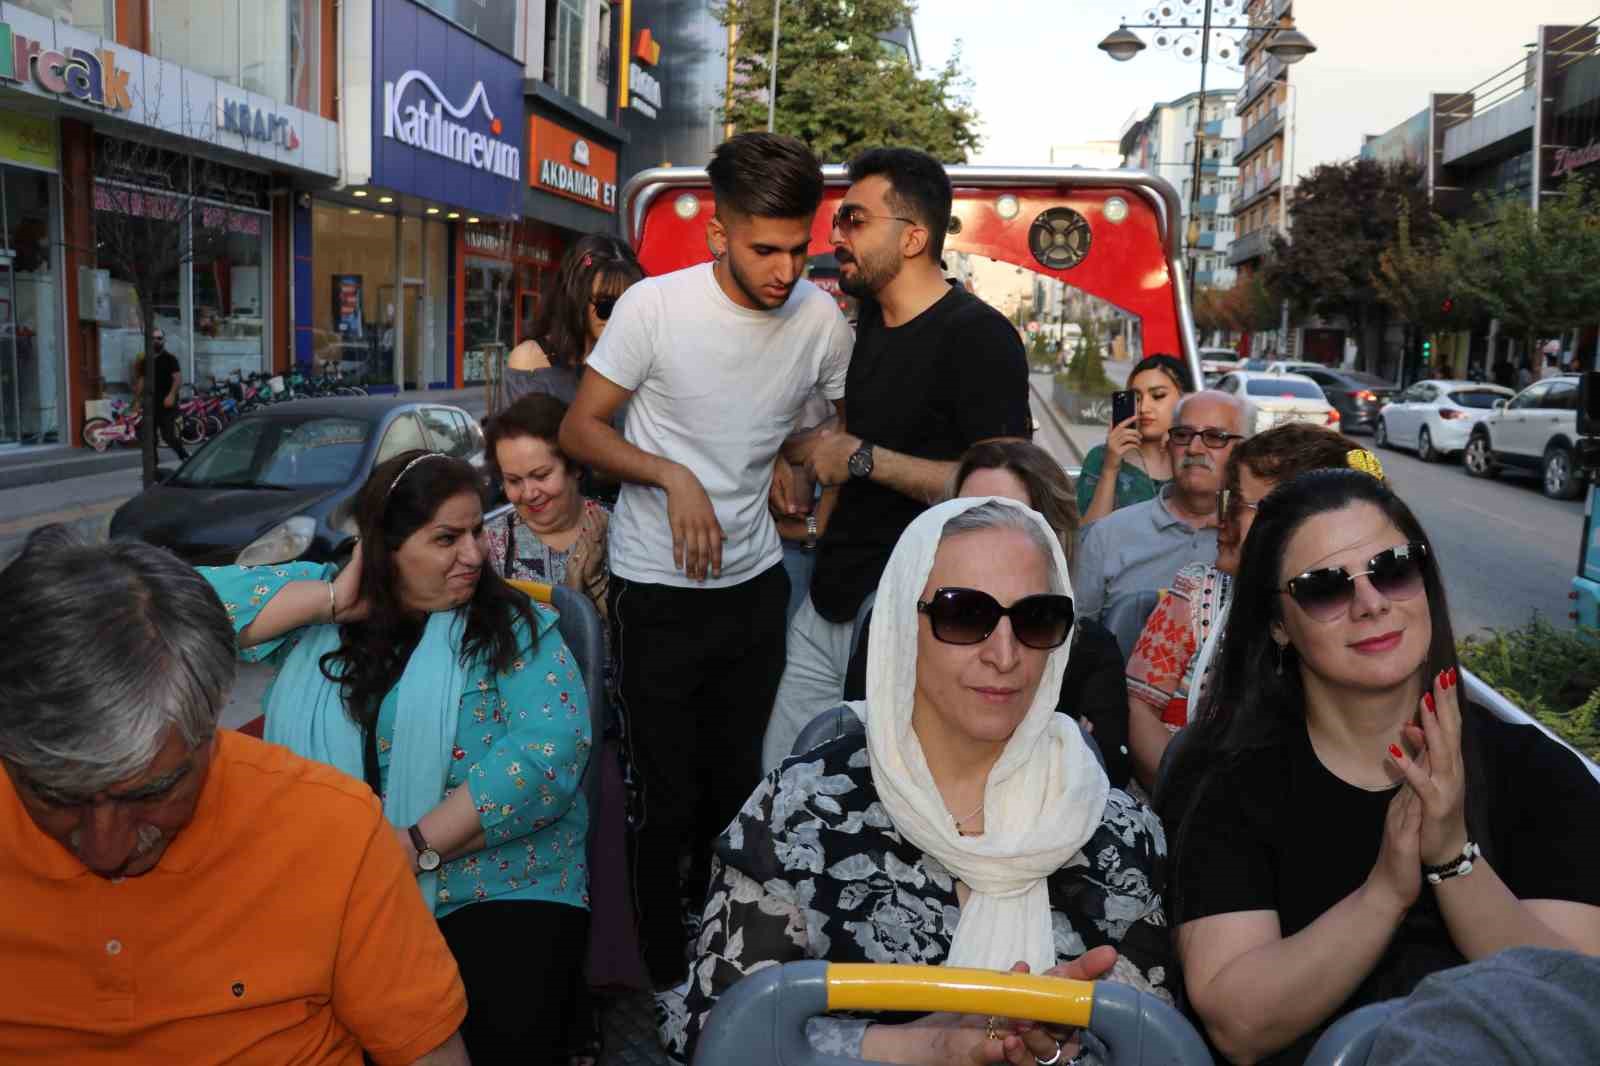 İranlı turistlere üstü açık minibüsle şehir turu